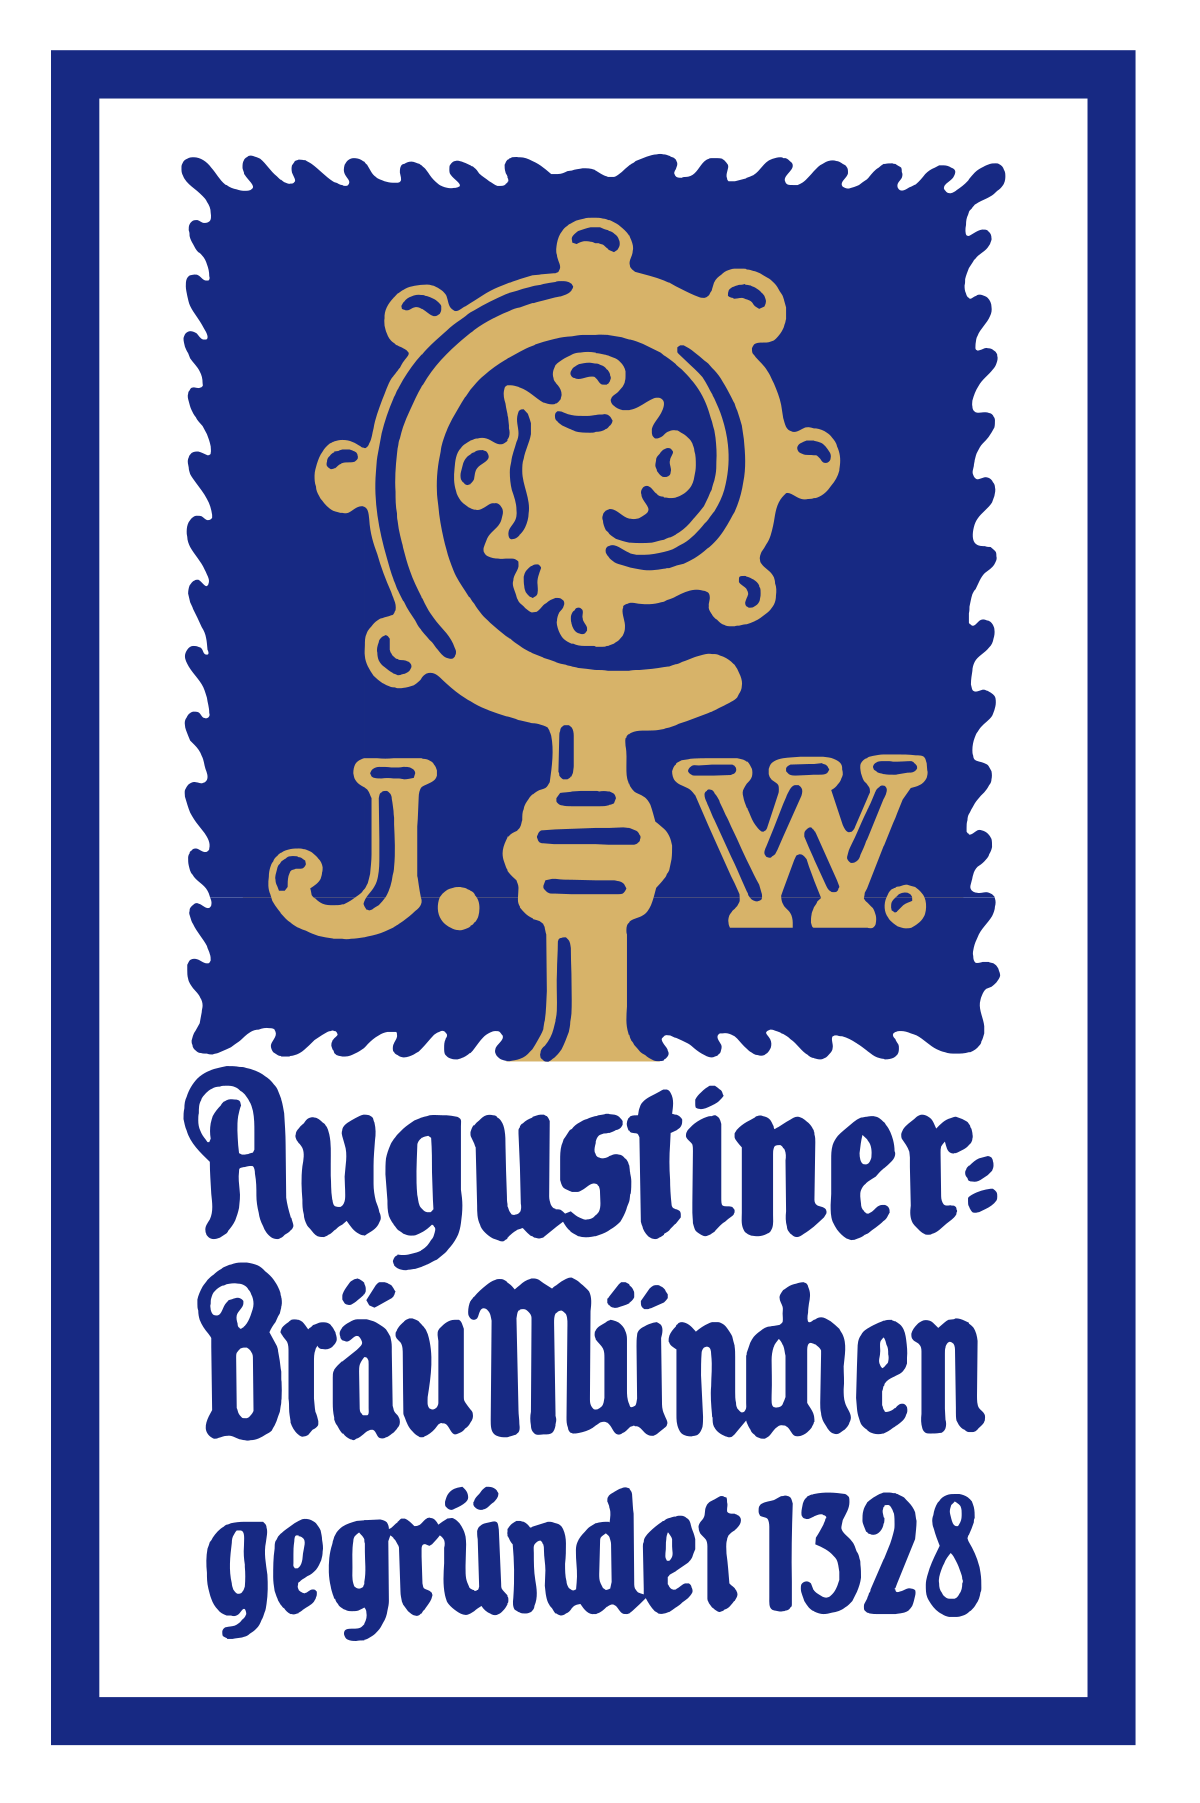 Augustiner-Bräu Wagner KG